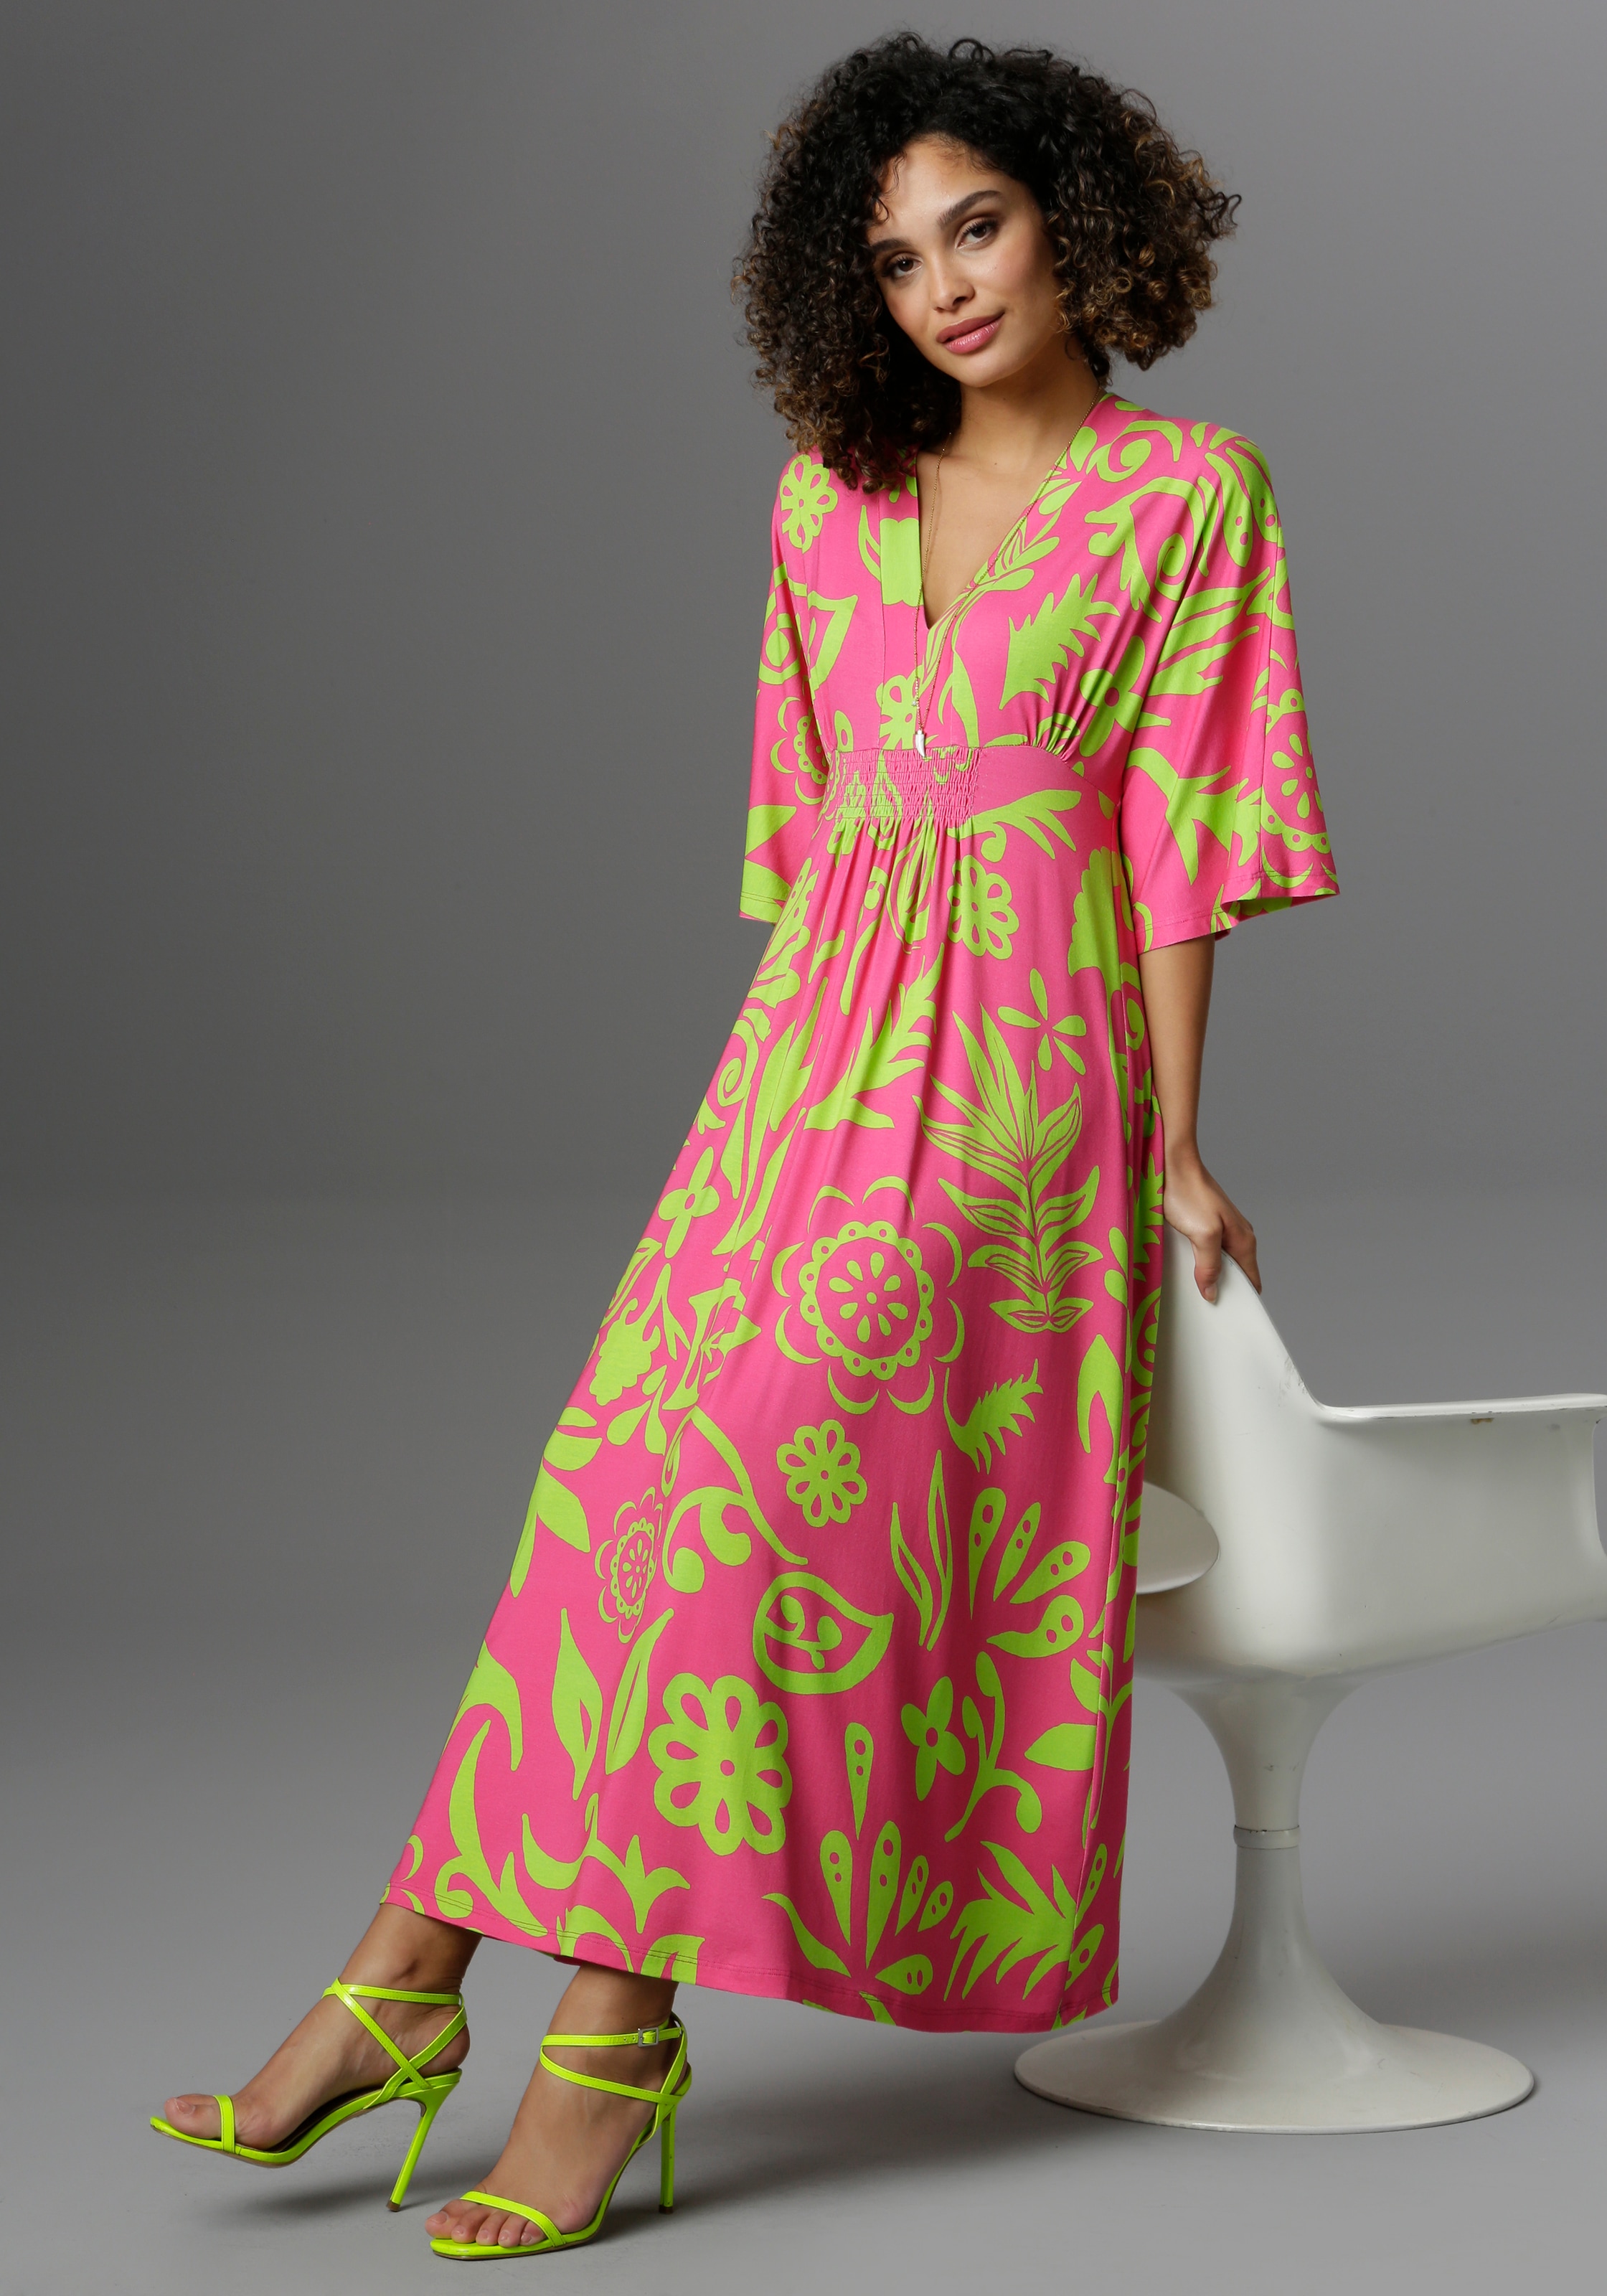 Pinkes Kleid | OTTO online Kleider bei kaufen jetzt Pinkfarbene